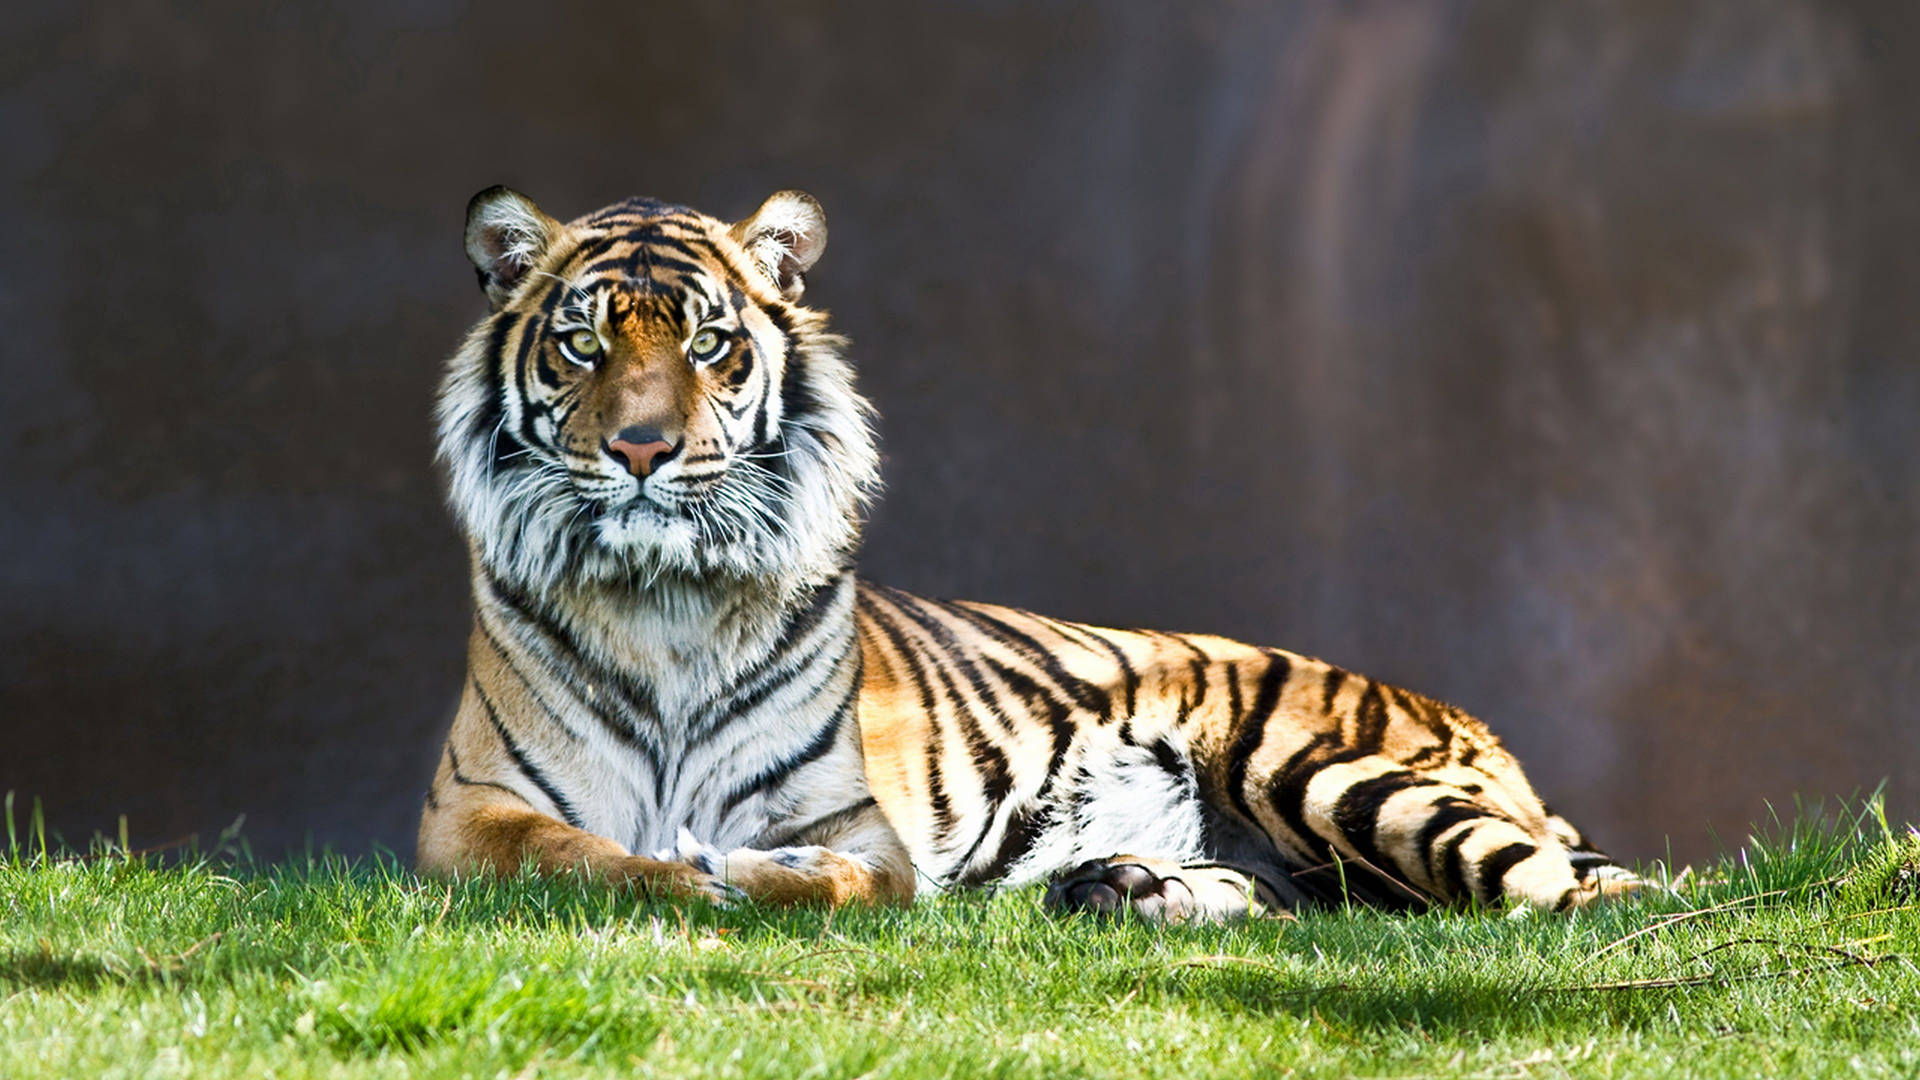 Predator Tiger Sitting On Grass